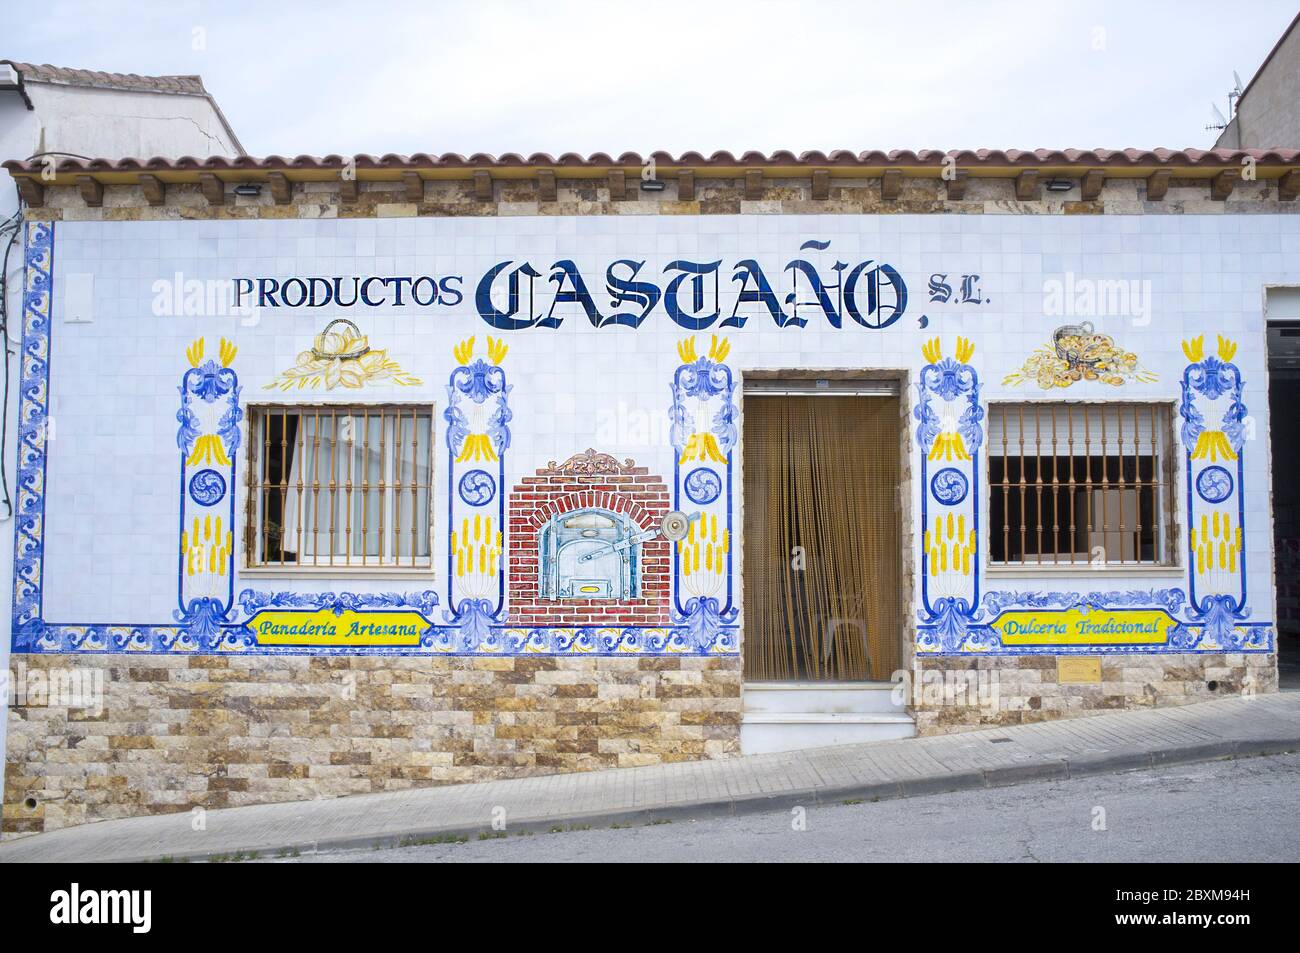 Hornachos, Espagne - 1er juin 2020 : façade traditionnelle de carreaux vitrés de la boulangerie, Hornachos, Espagne. Tourisme rural et gastronomique en Estrémadure Banque D'Images